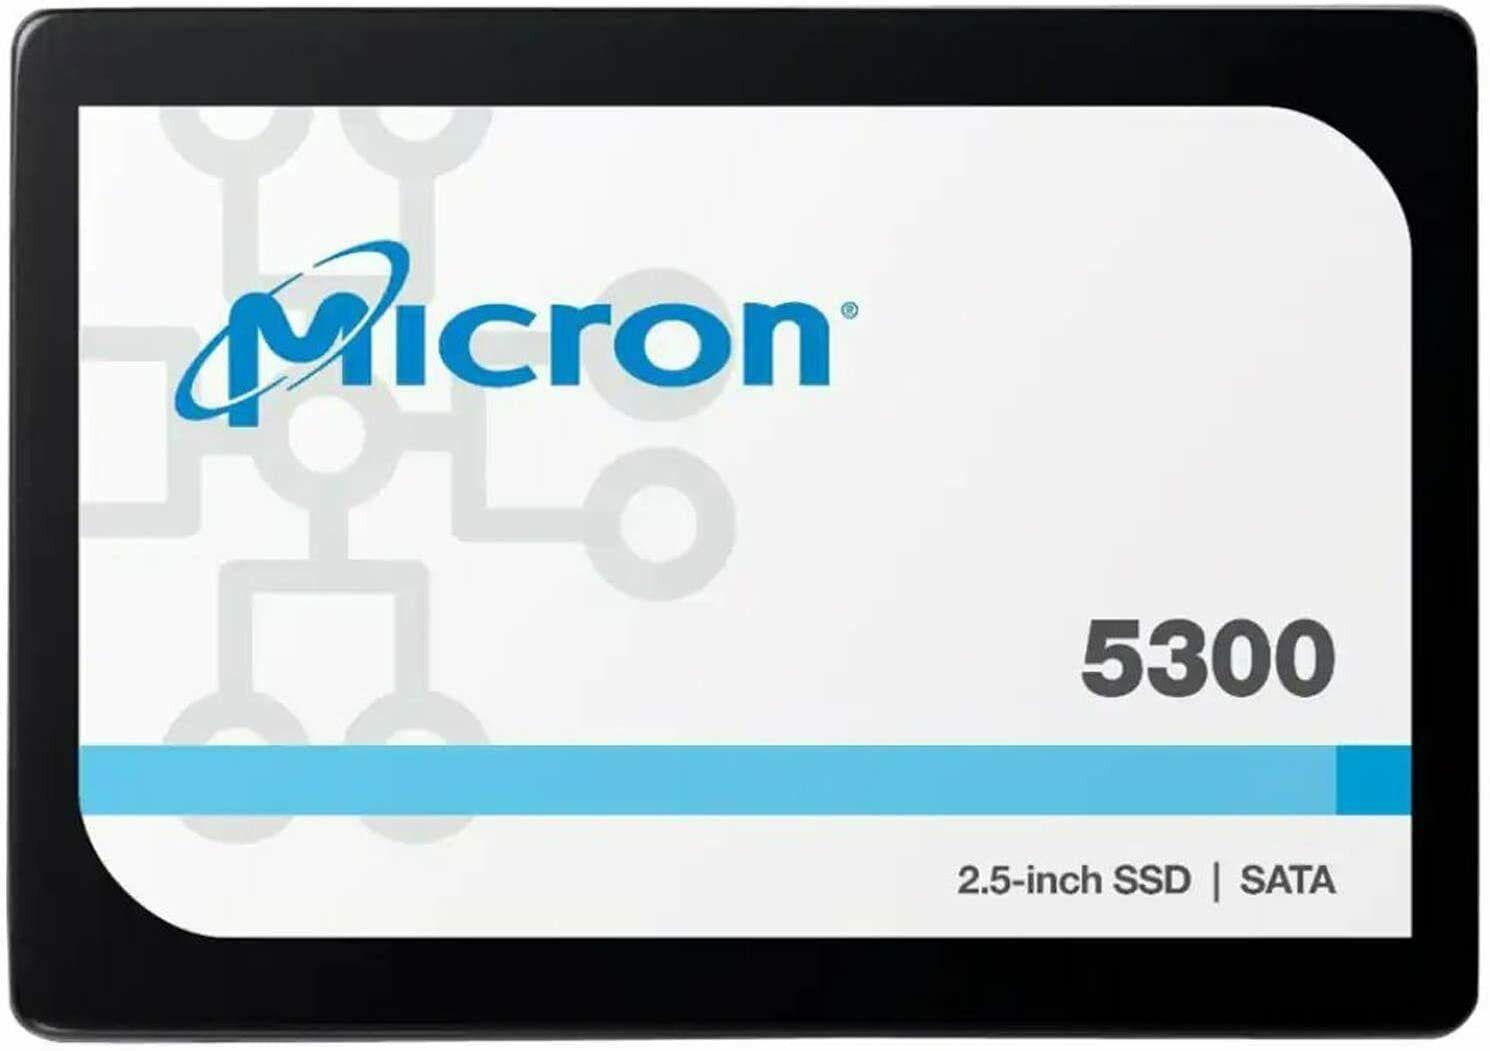 MICRON (CRUCIAL) 5300 PRO 3840GB SATA 2.5' (7mm) Non-SED Enterprise SSD MICRON